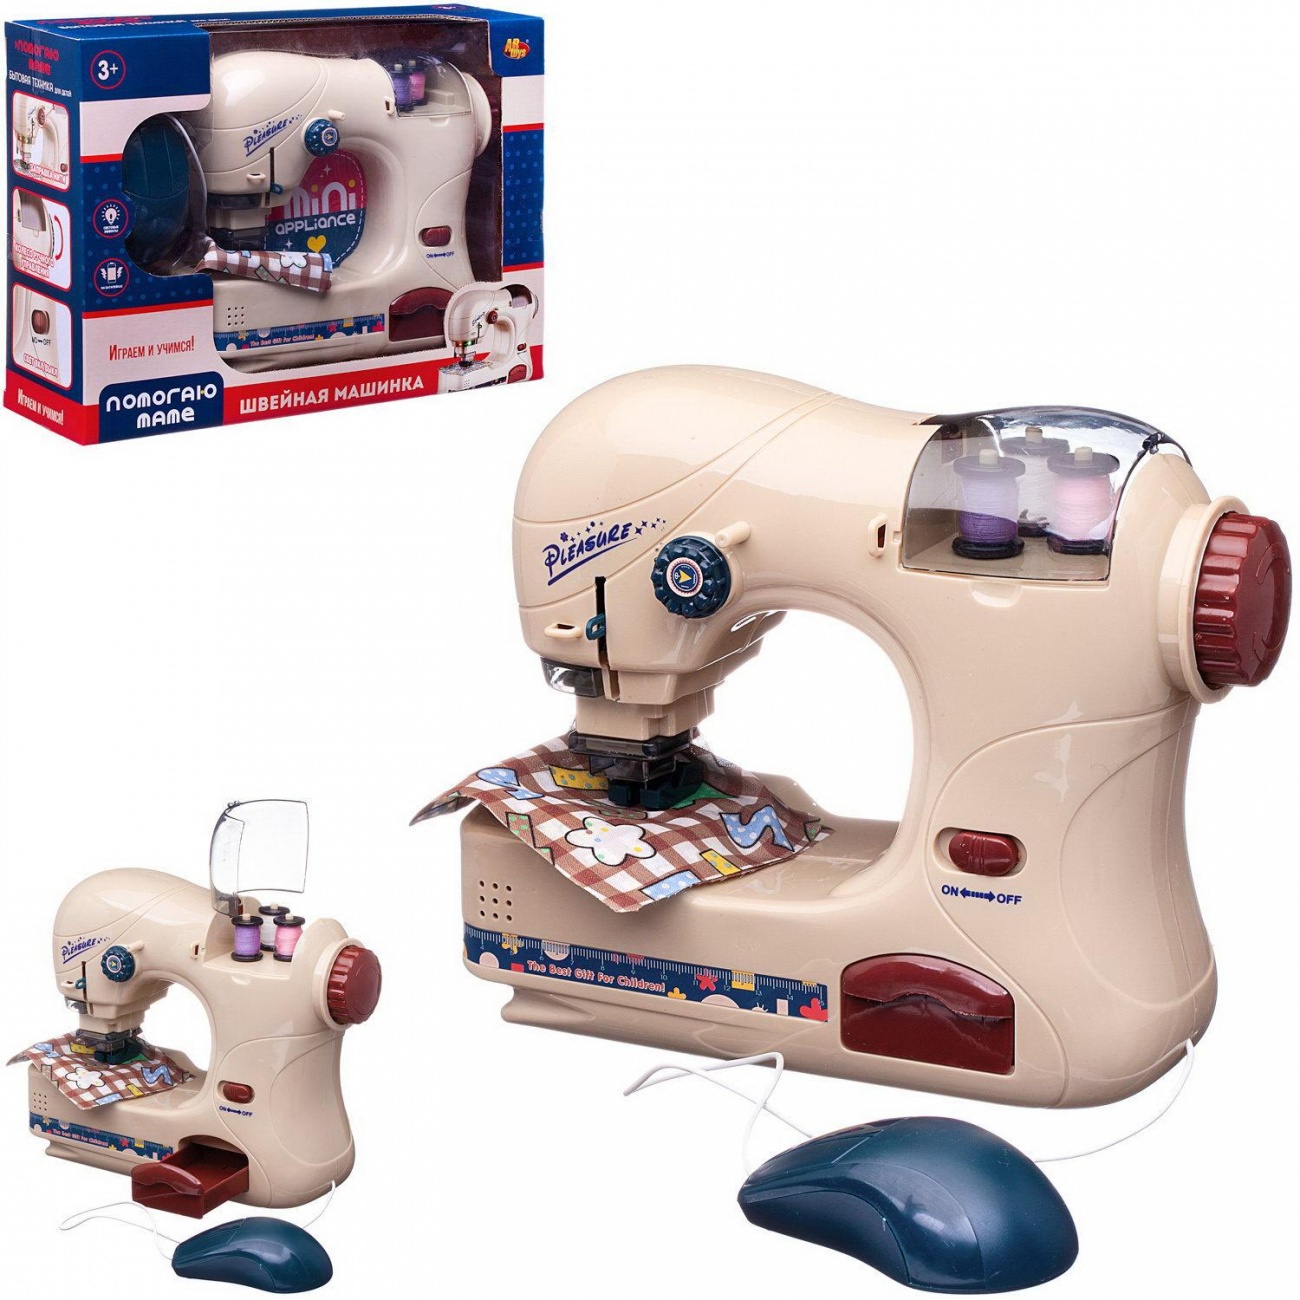 Помогаю Маме Abtoys Швейная машинка модель 2 (имитация шитья) PT-01554